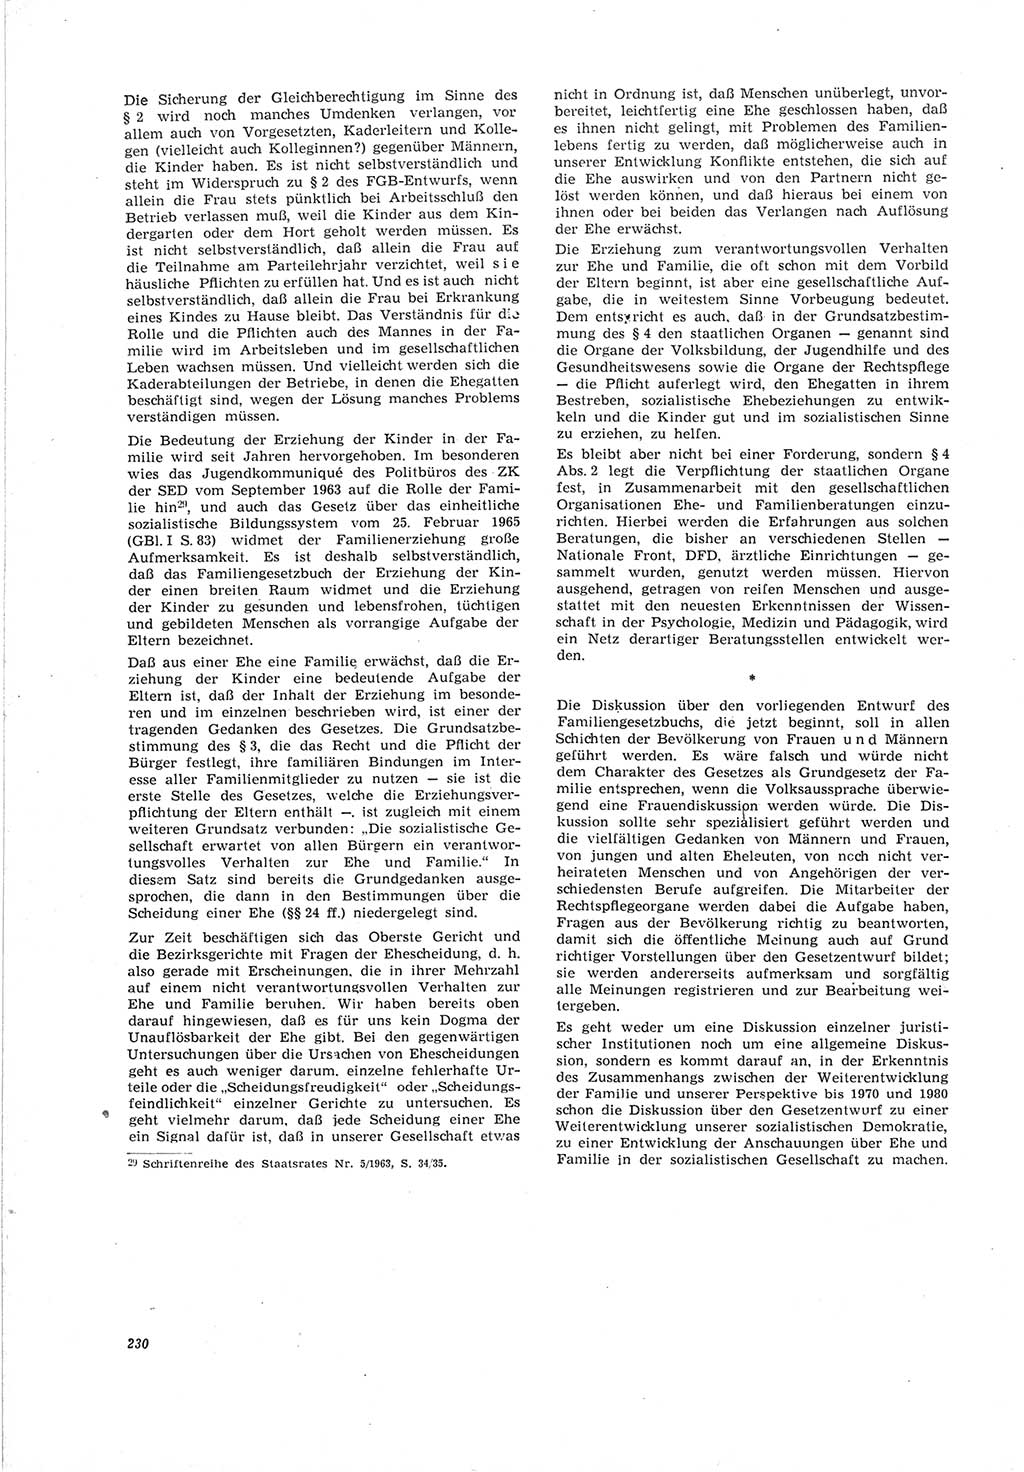 Neue Justiz (NJ), Zeitschrift für Recht und Rechtswissenschaft [Deutsche Demokratische Republik (DDR)], 19. Jahrgang 1965, Seite 230 (NJ DDR 1965, S. 230)